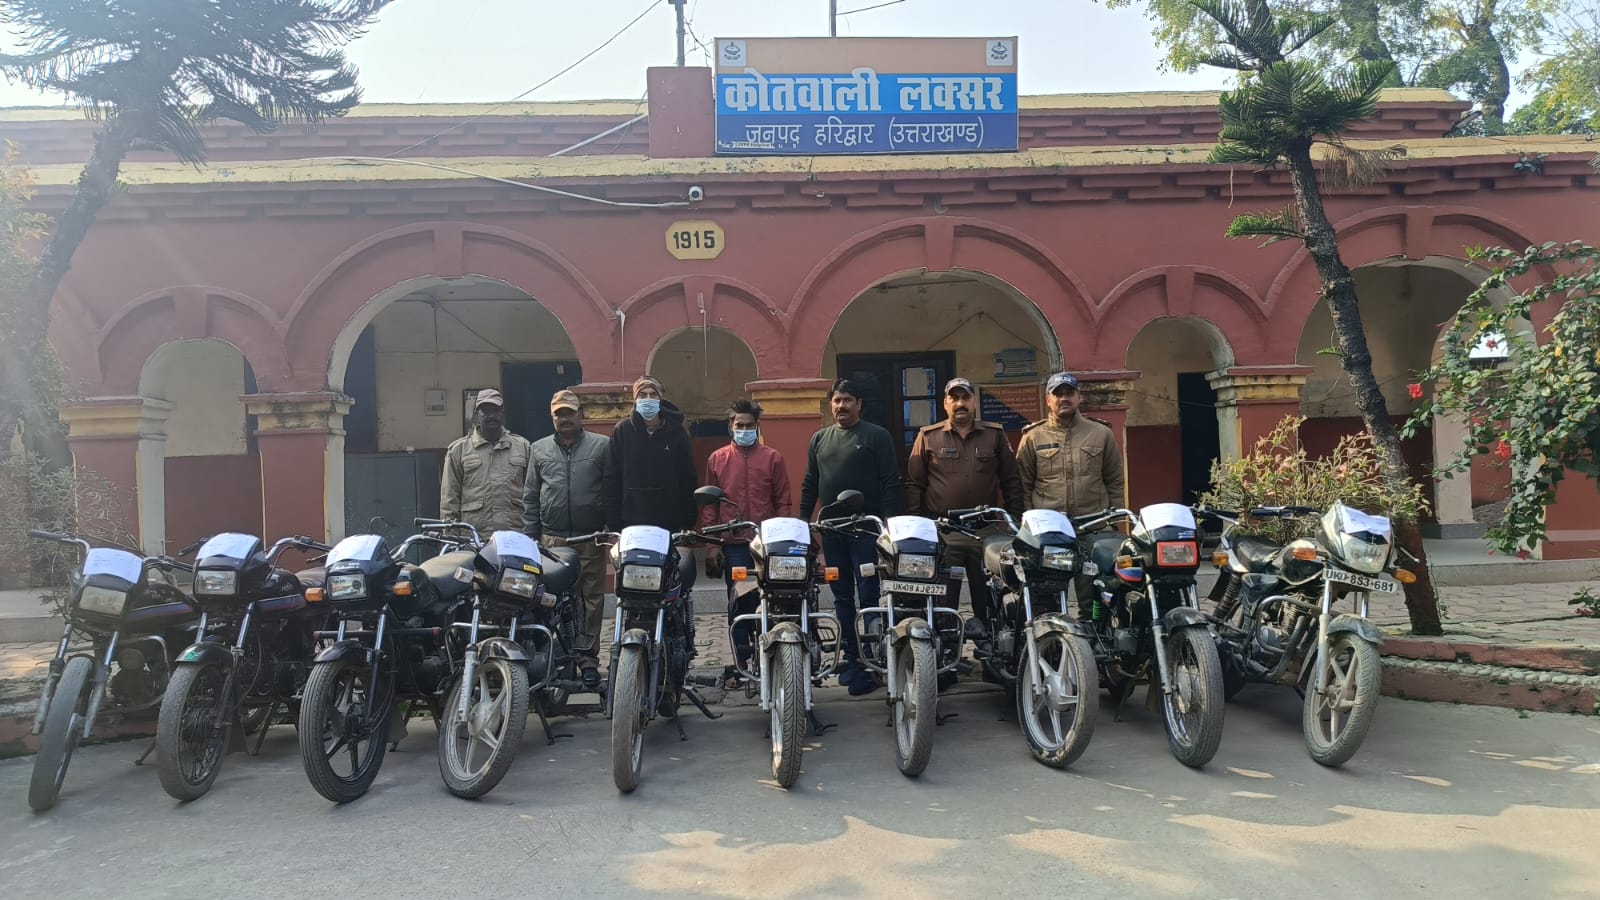 10 stolen motorcycles, आज फिर पकडी दो चोर सहित 10 चोरी की मोटरसाइकिलें